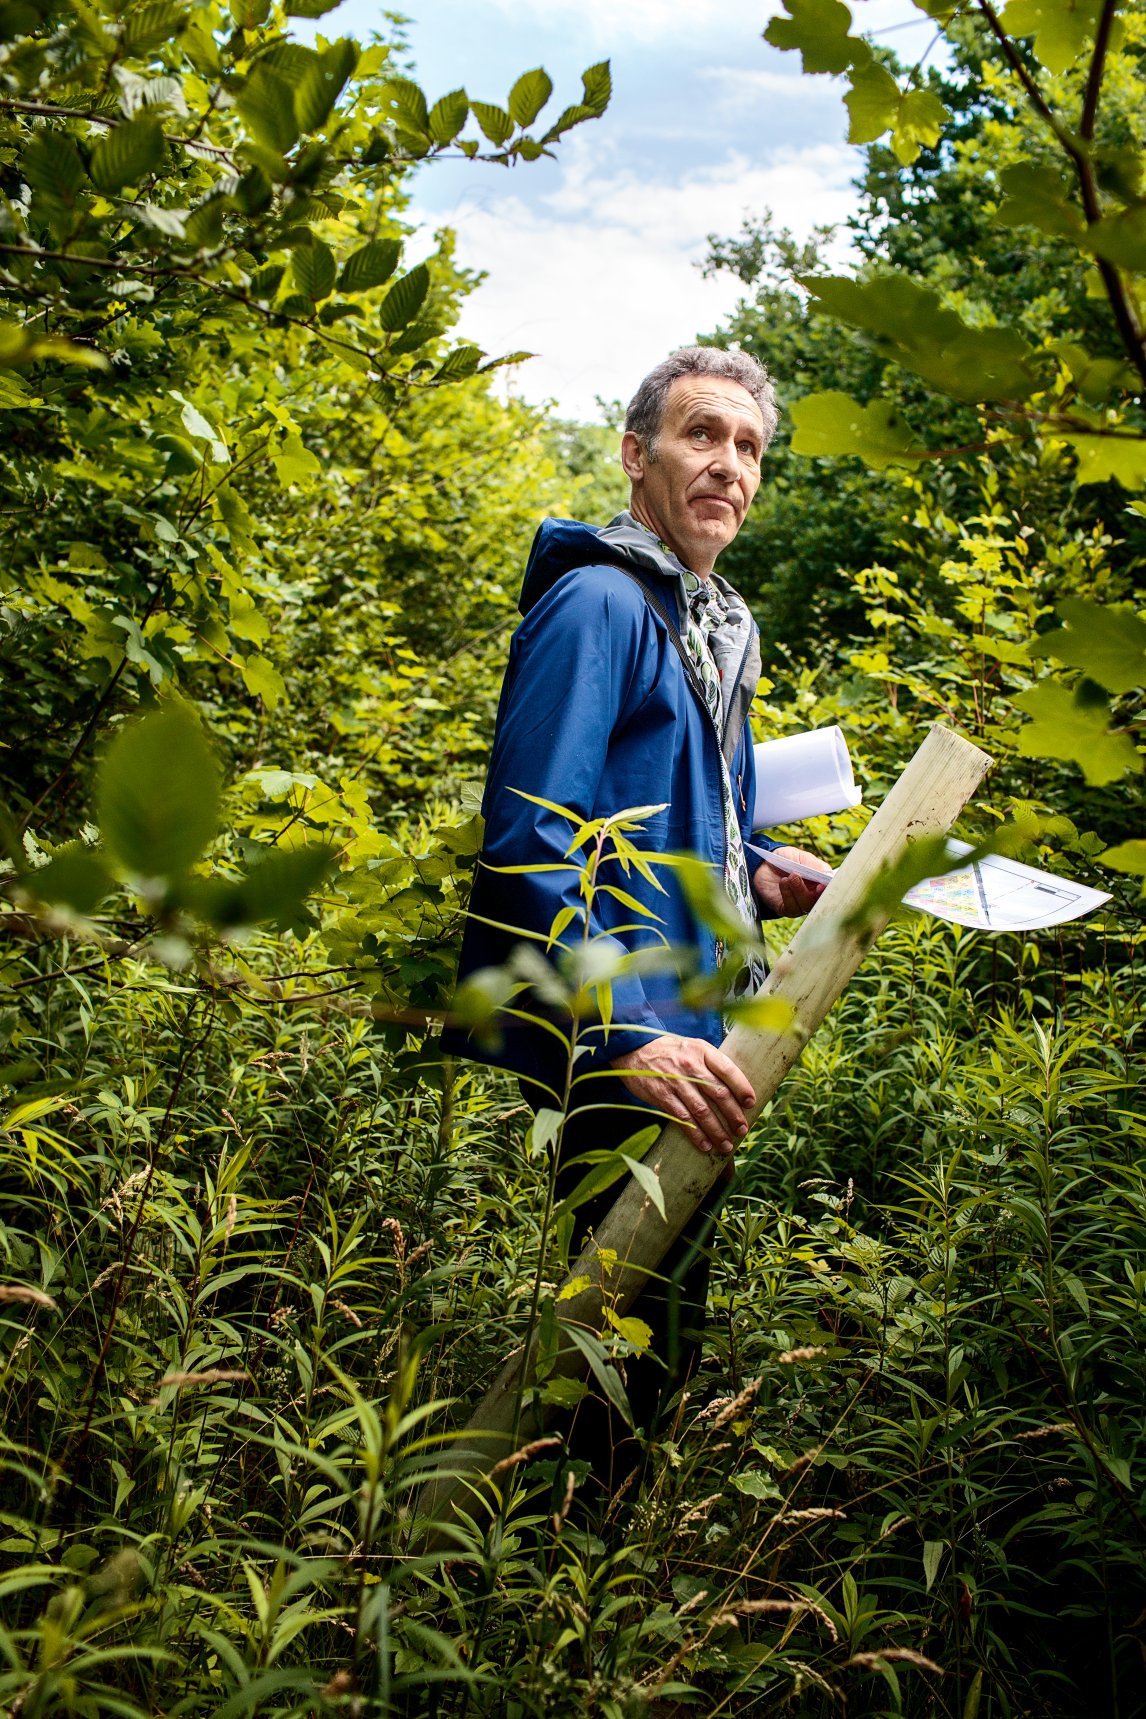 <p>WALDARBEITER<br />
Jürgen Bauhus, Professor für Waldbau an der Universität Freiburg, hat nahe der Stadt ein Versuchswäldchen angelegt.</p>
